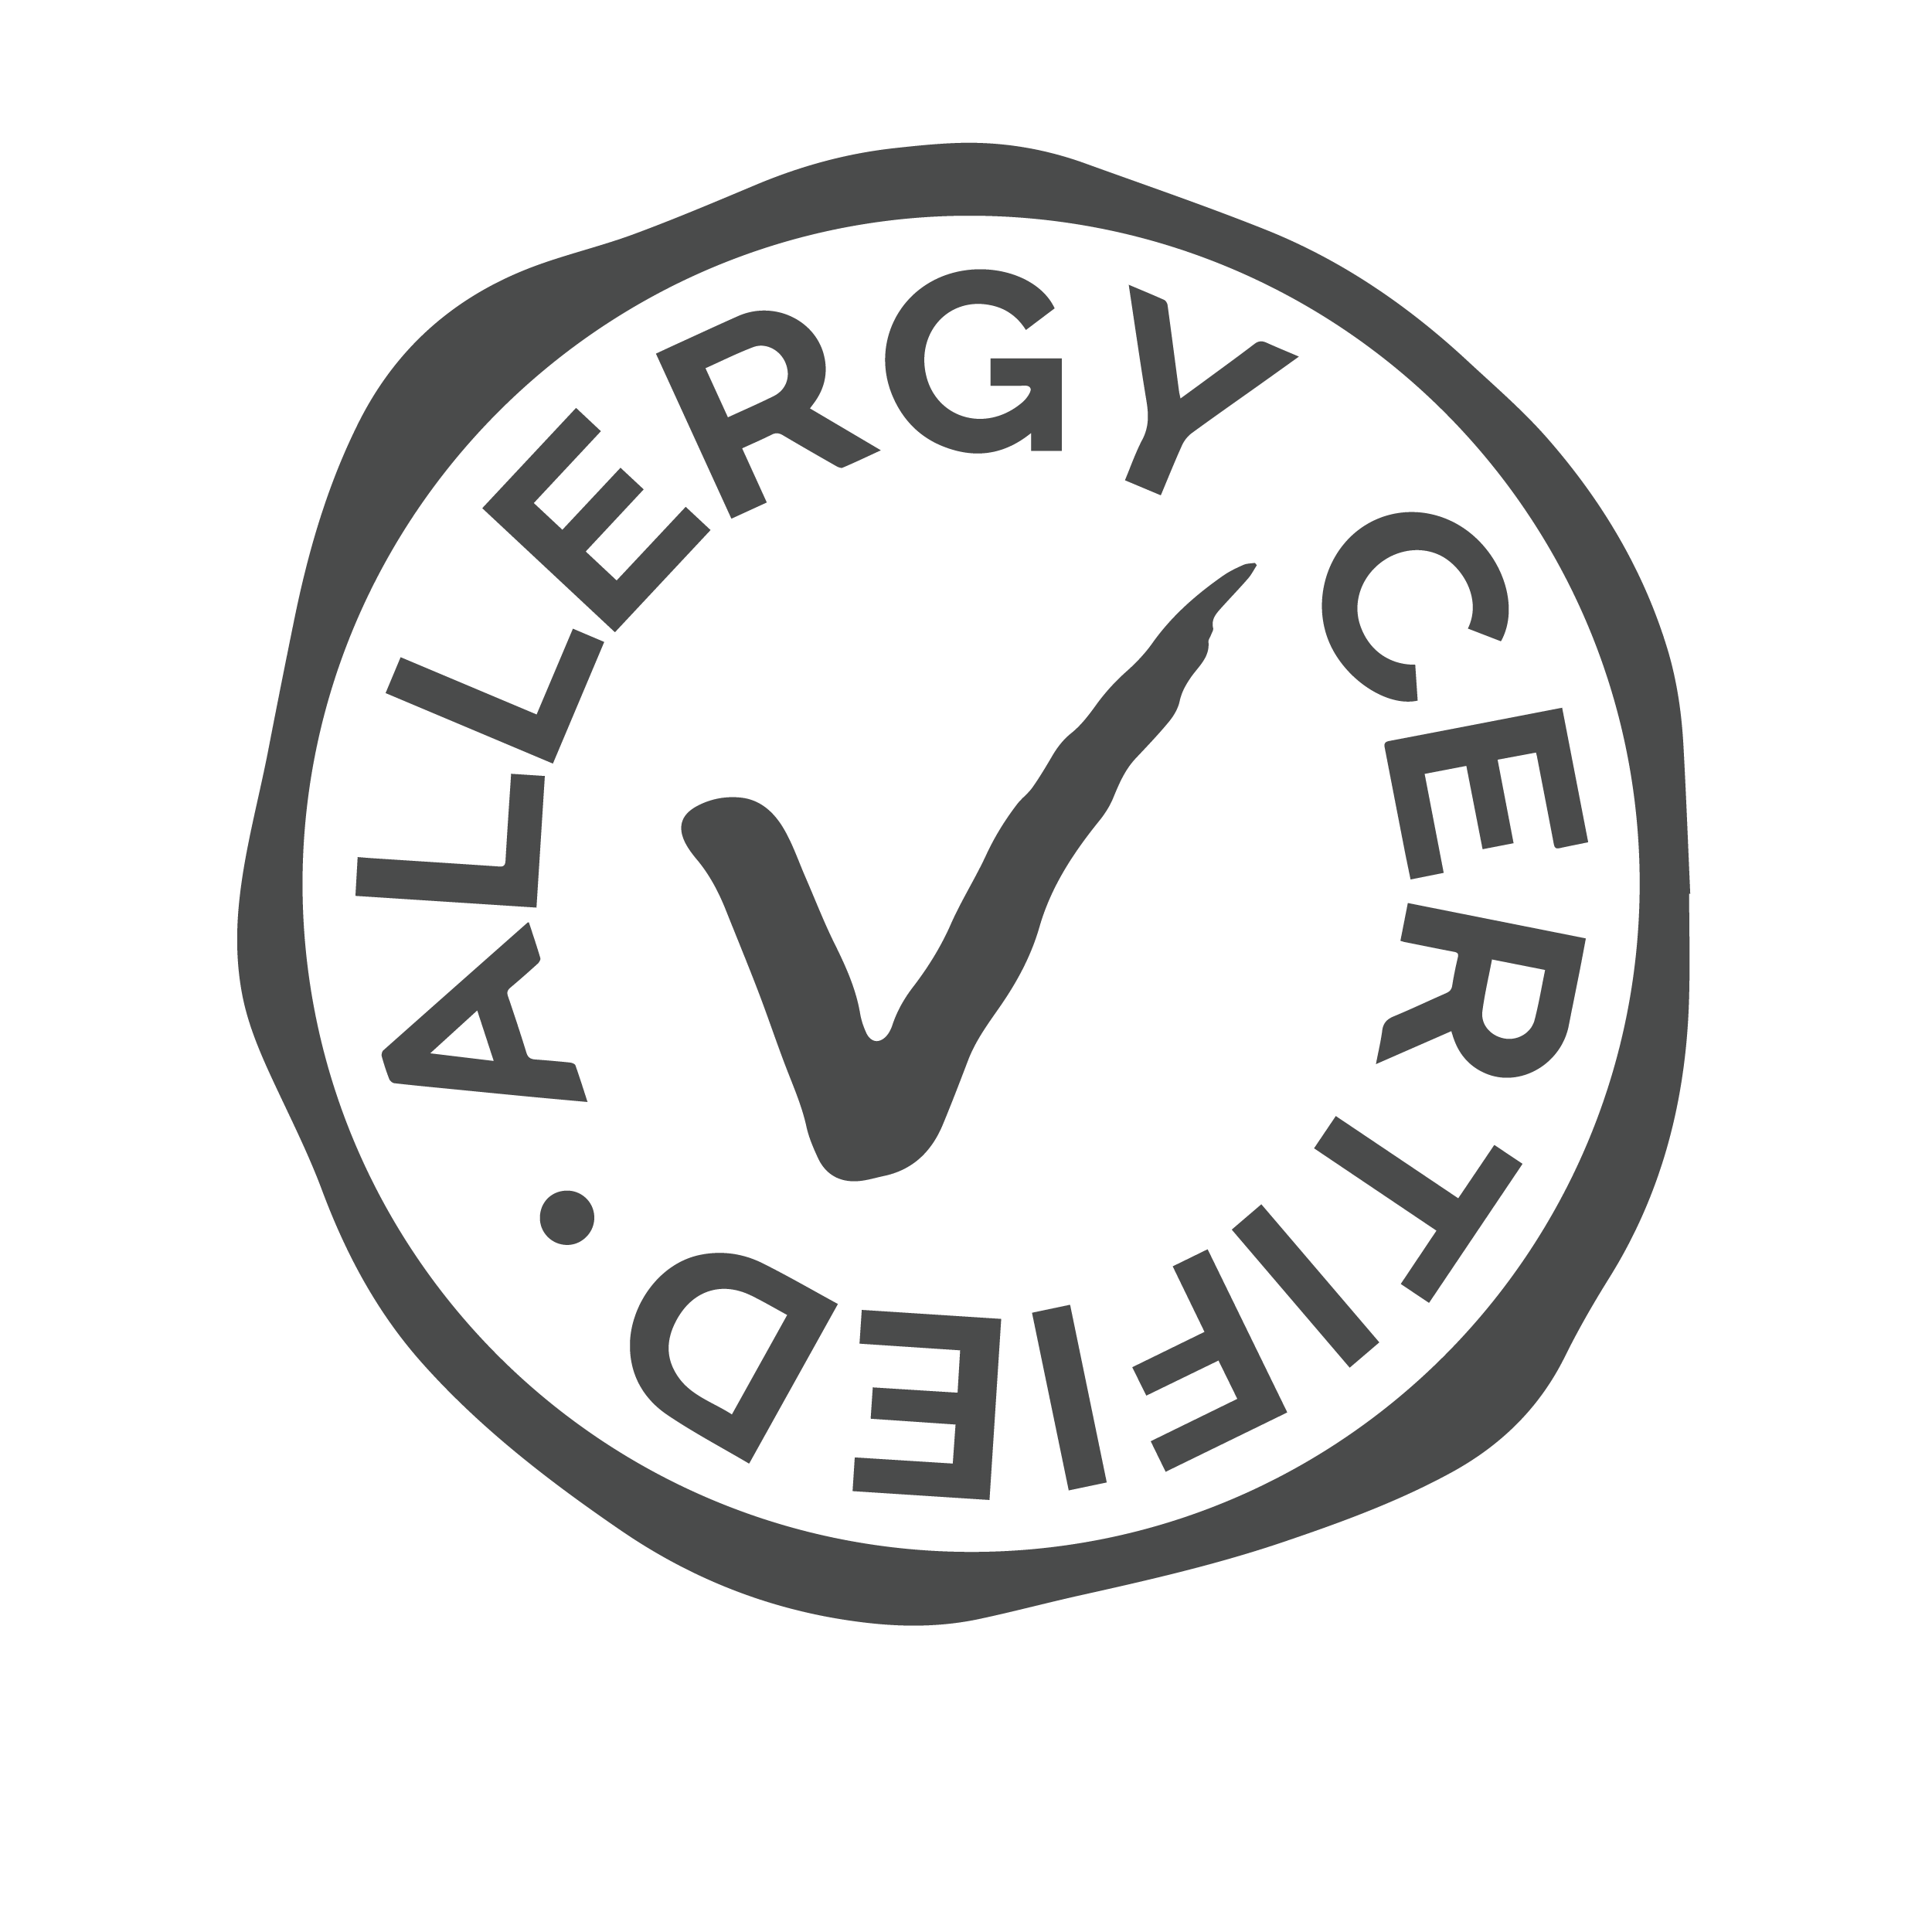 Allergy Cerified logo - lille kanin